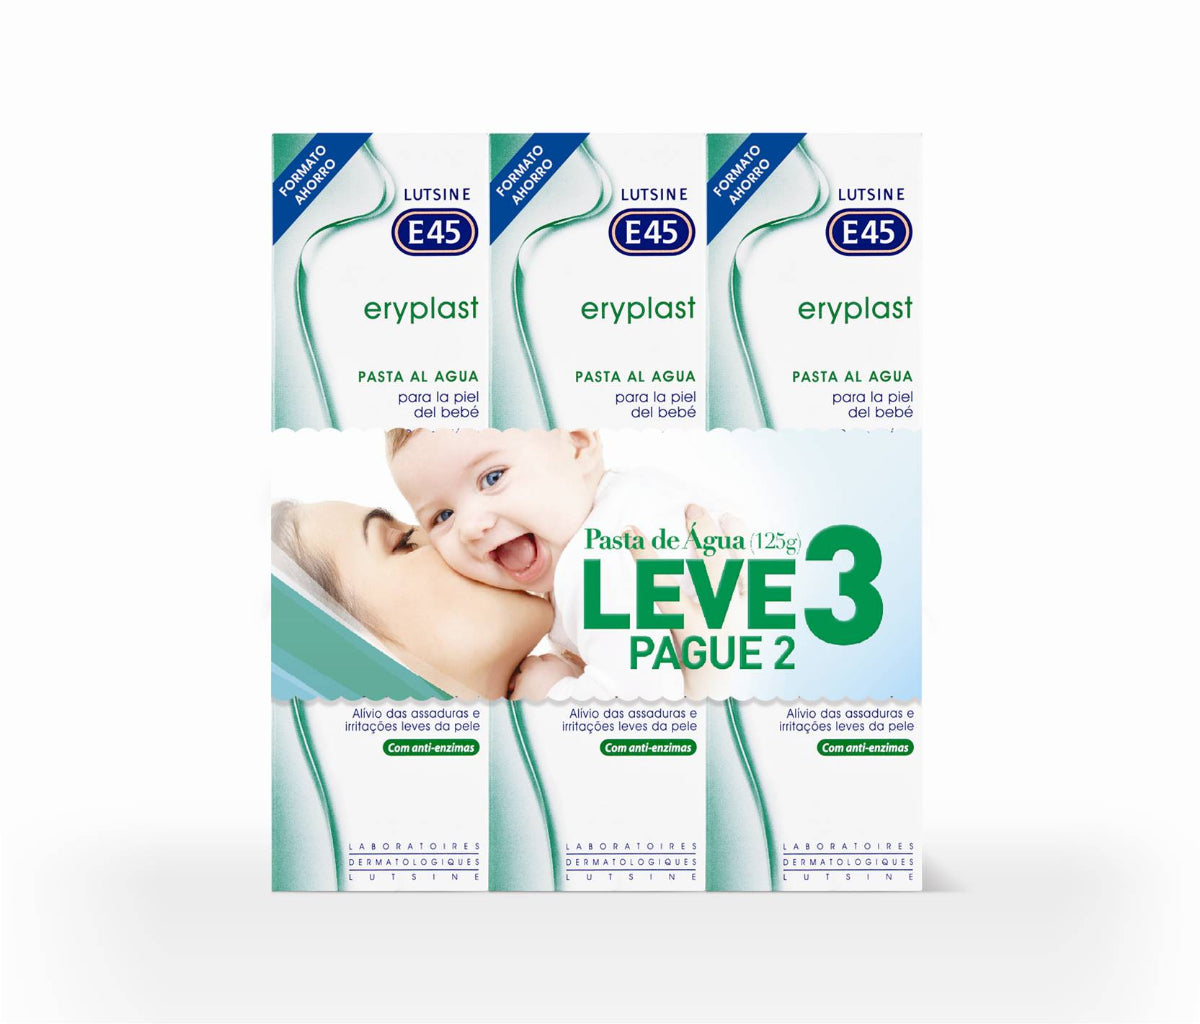 Lutsine E45 Eryplast Water Paste Cream - 125g (x2 units) + 125g OFFER - Healtsy